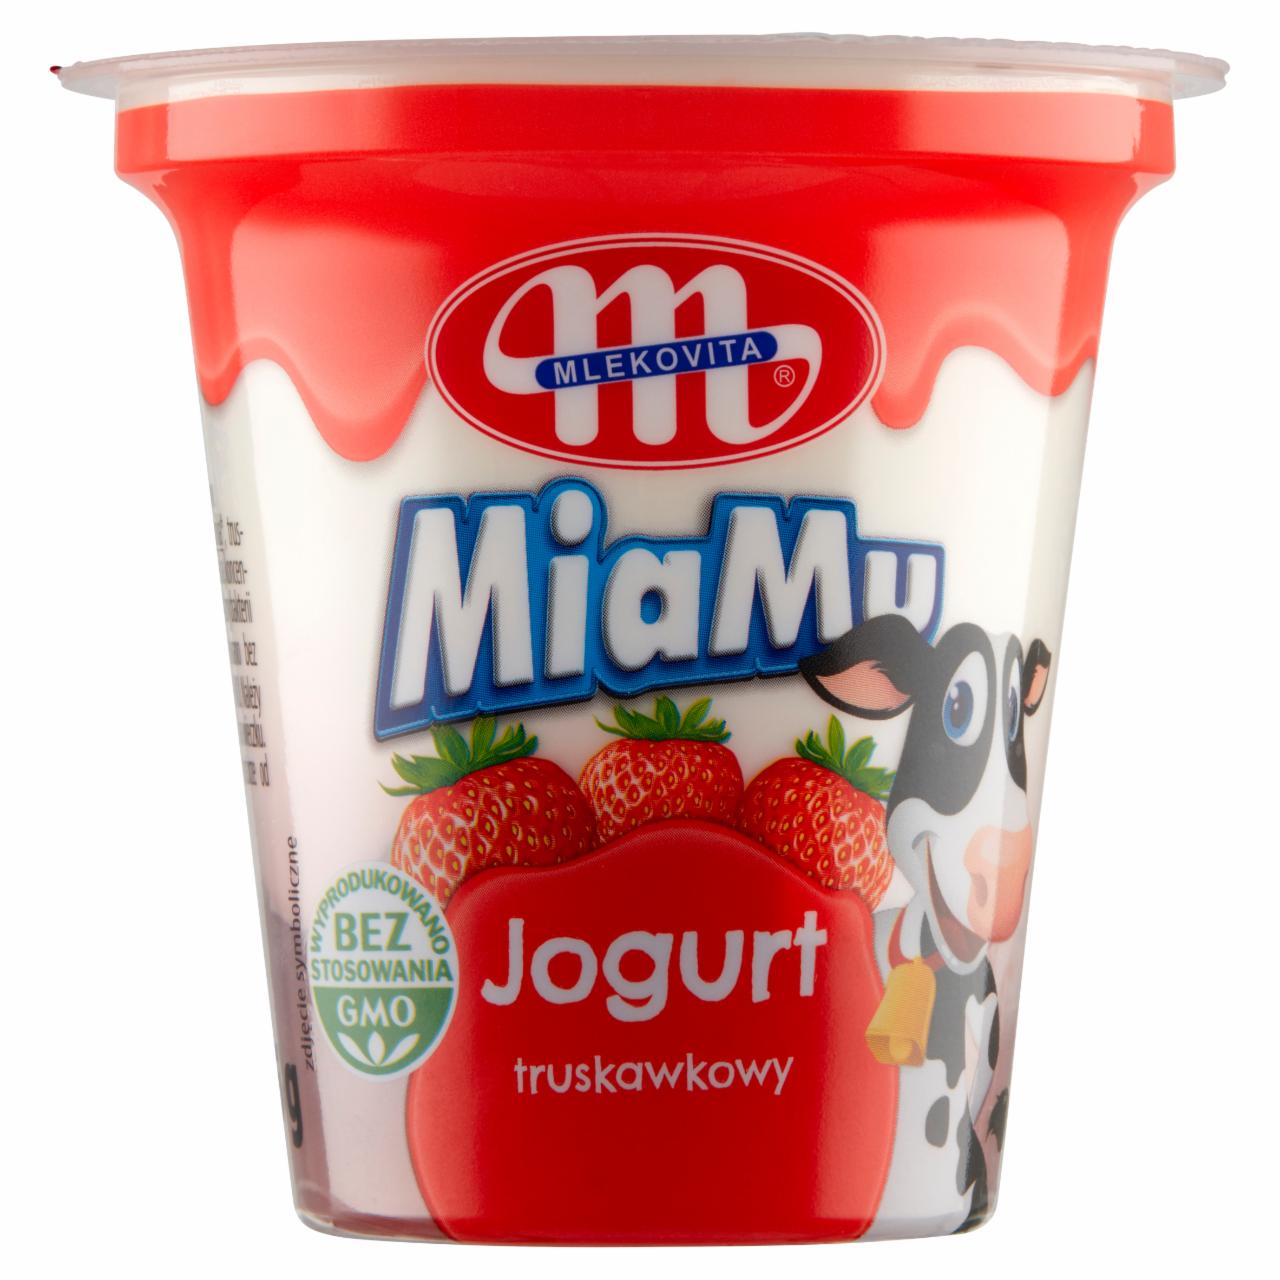 Zdjęcia - Mlekovita MiaMu Jogurt truskawkowy 125 g